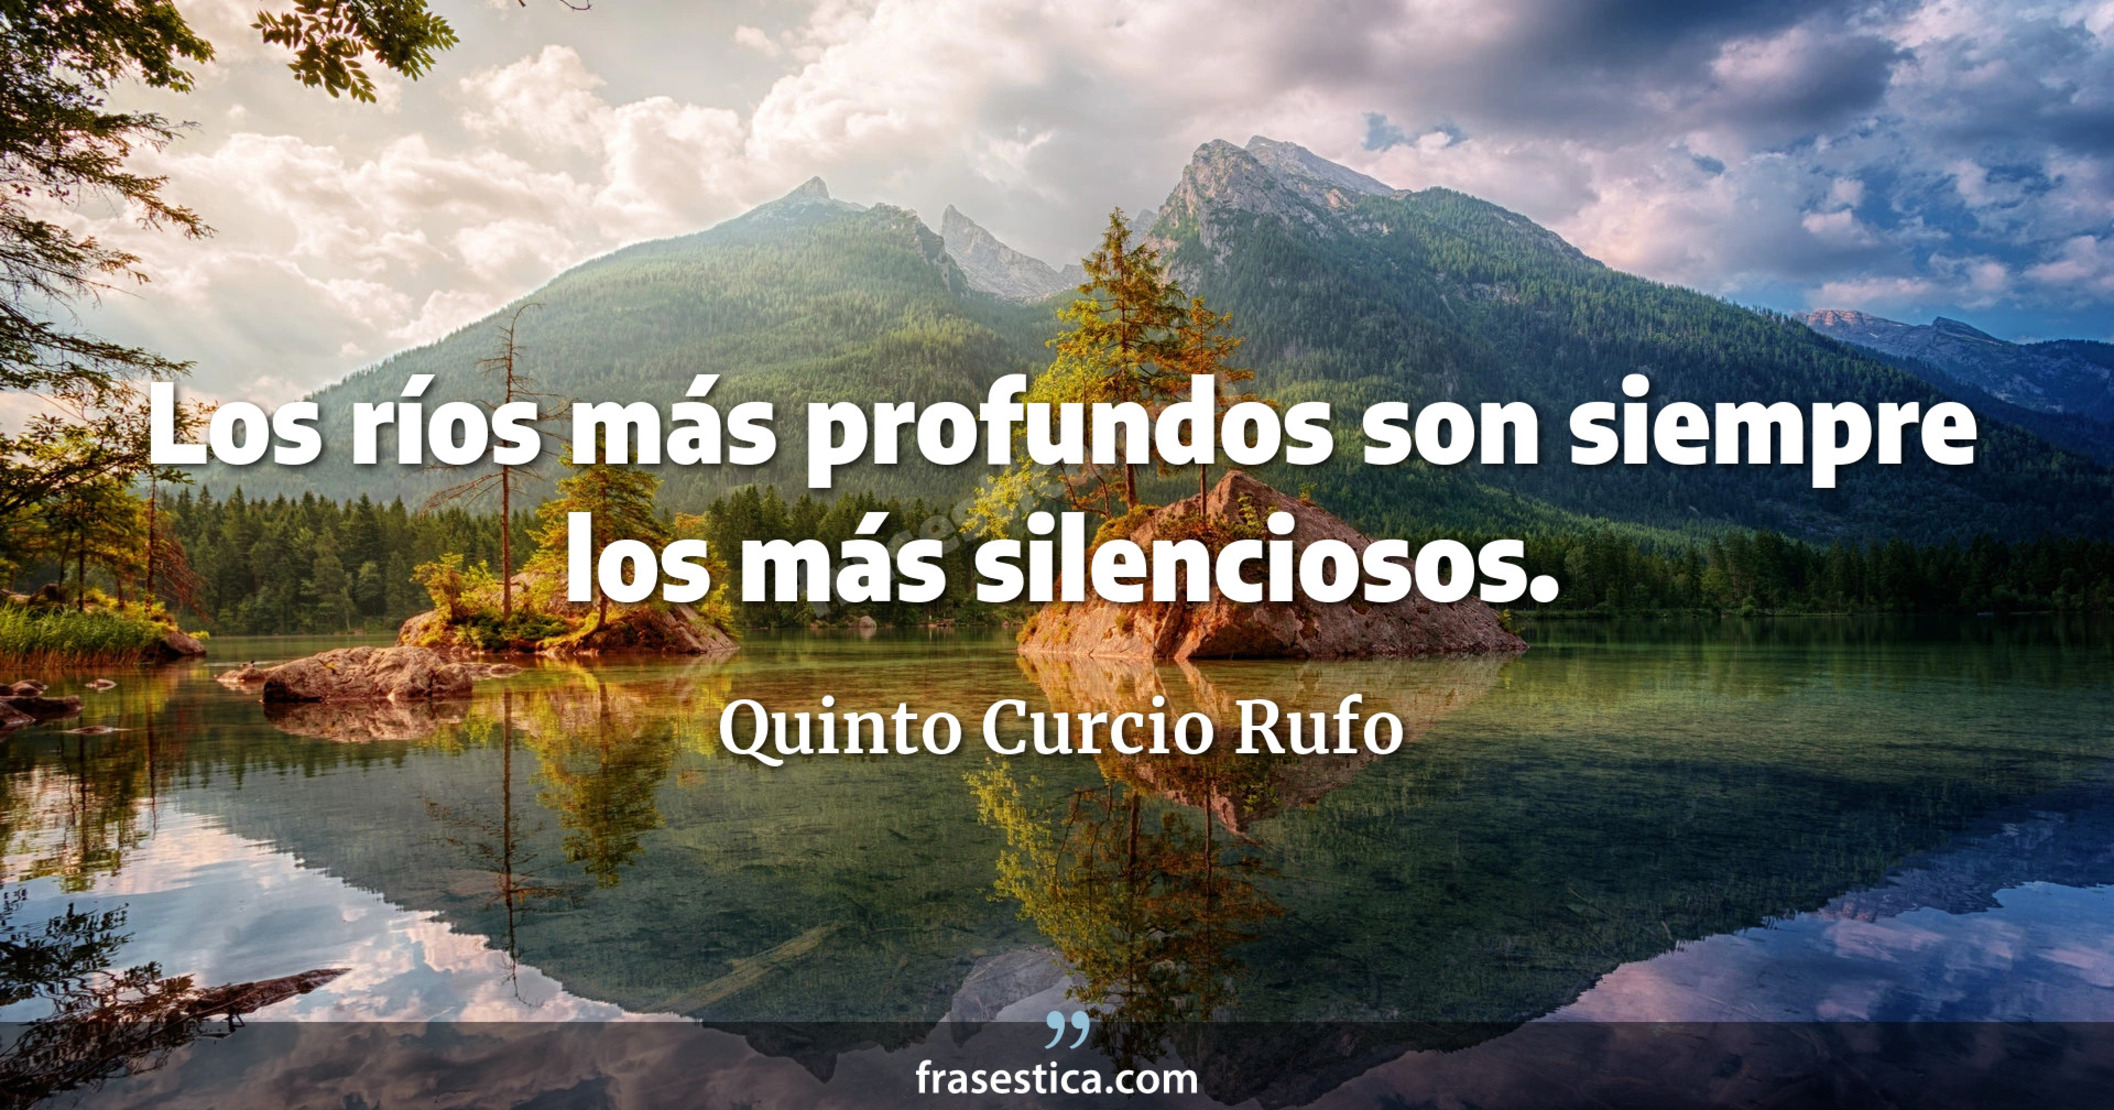 Los ríos más profundos son siempre los más silenciosos. - Quinto Curcio Rufo